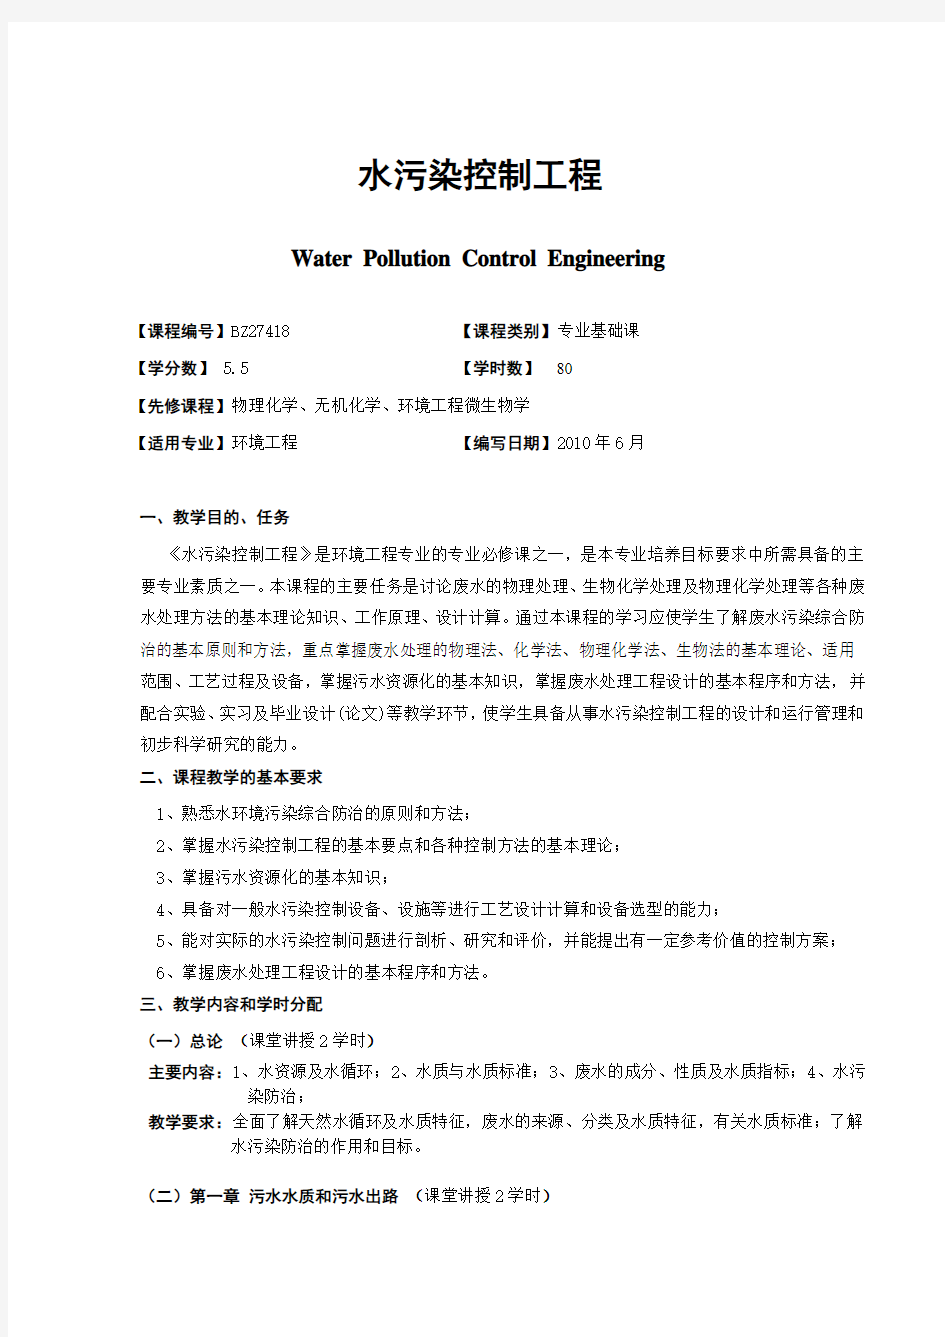 广西民族大学化生学院2014-2015第一学期专业课课程大纲之水污染控制工程